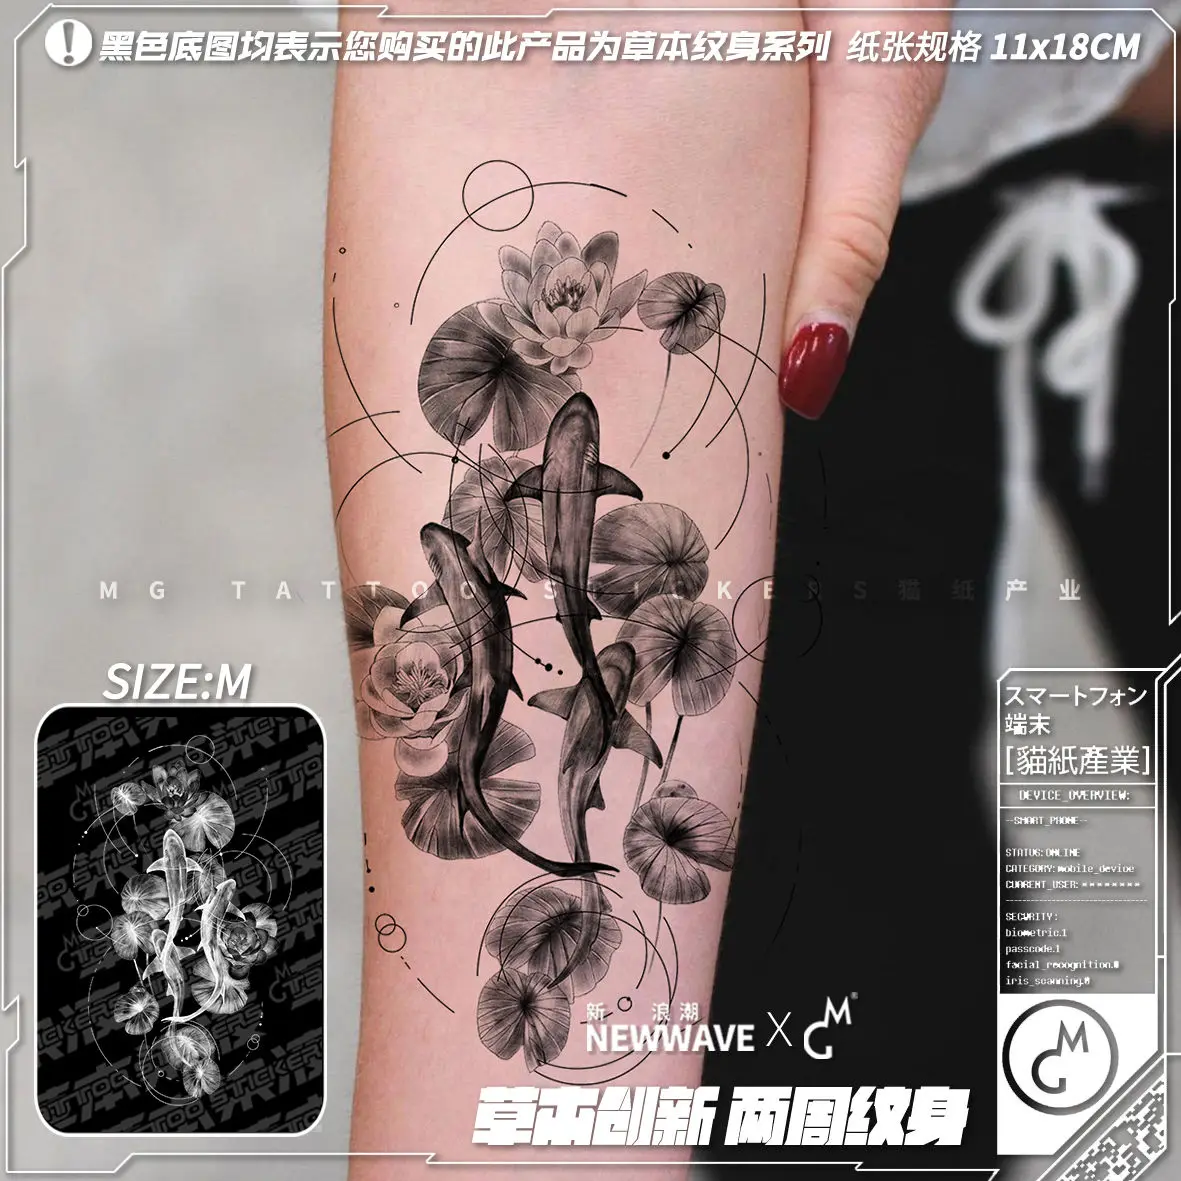 

Искусственная Татуировка в виде золотой рыбки для мужчин и женщин, стойкая тату-наклейка на руку, временная татуировка в виде рыбок кои, стойкая Татуировка в виде цветка лотоса, искусственная татуировка